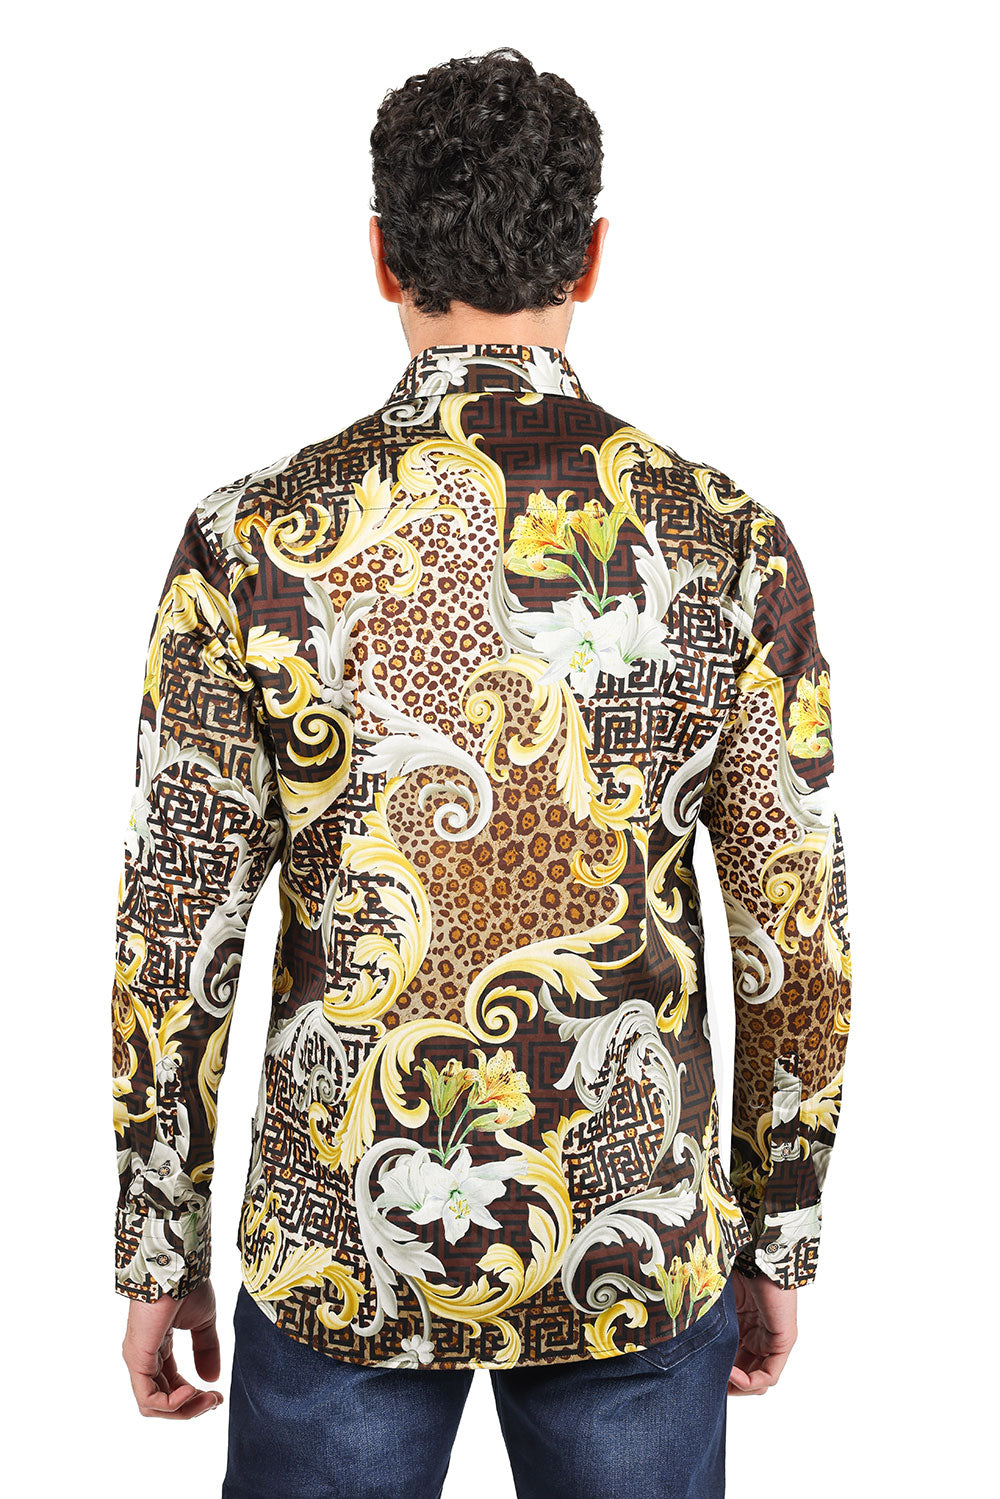 BARABAS men's Leopard Floral Greek Key Pattern Baroque Shirts 2SP34 Brown